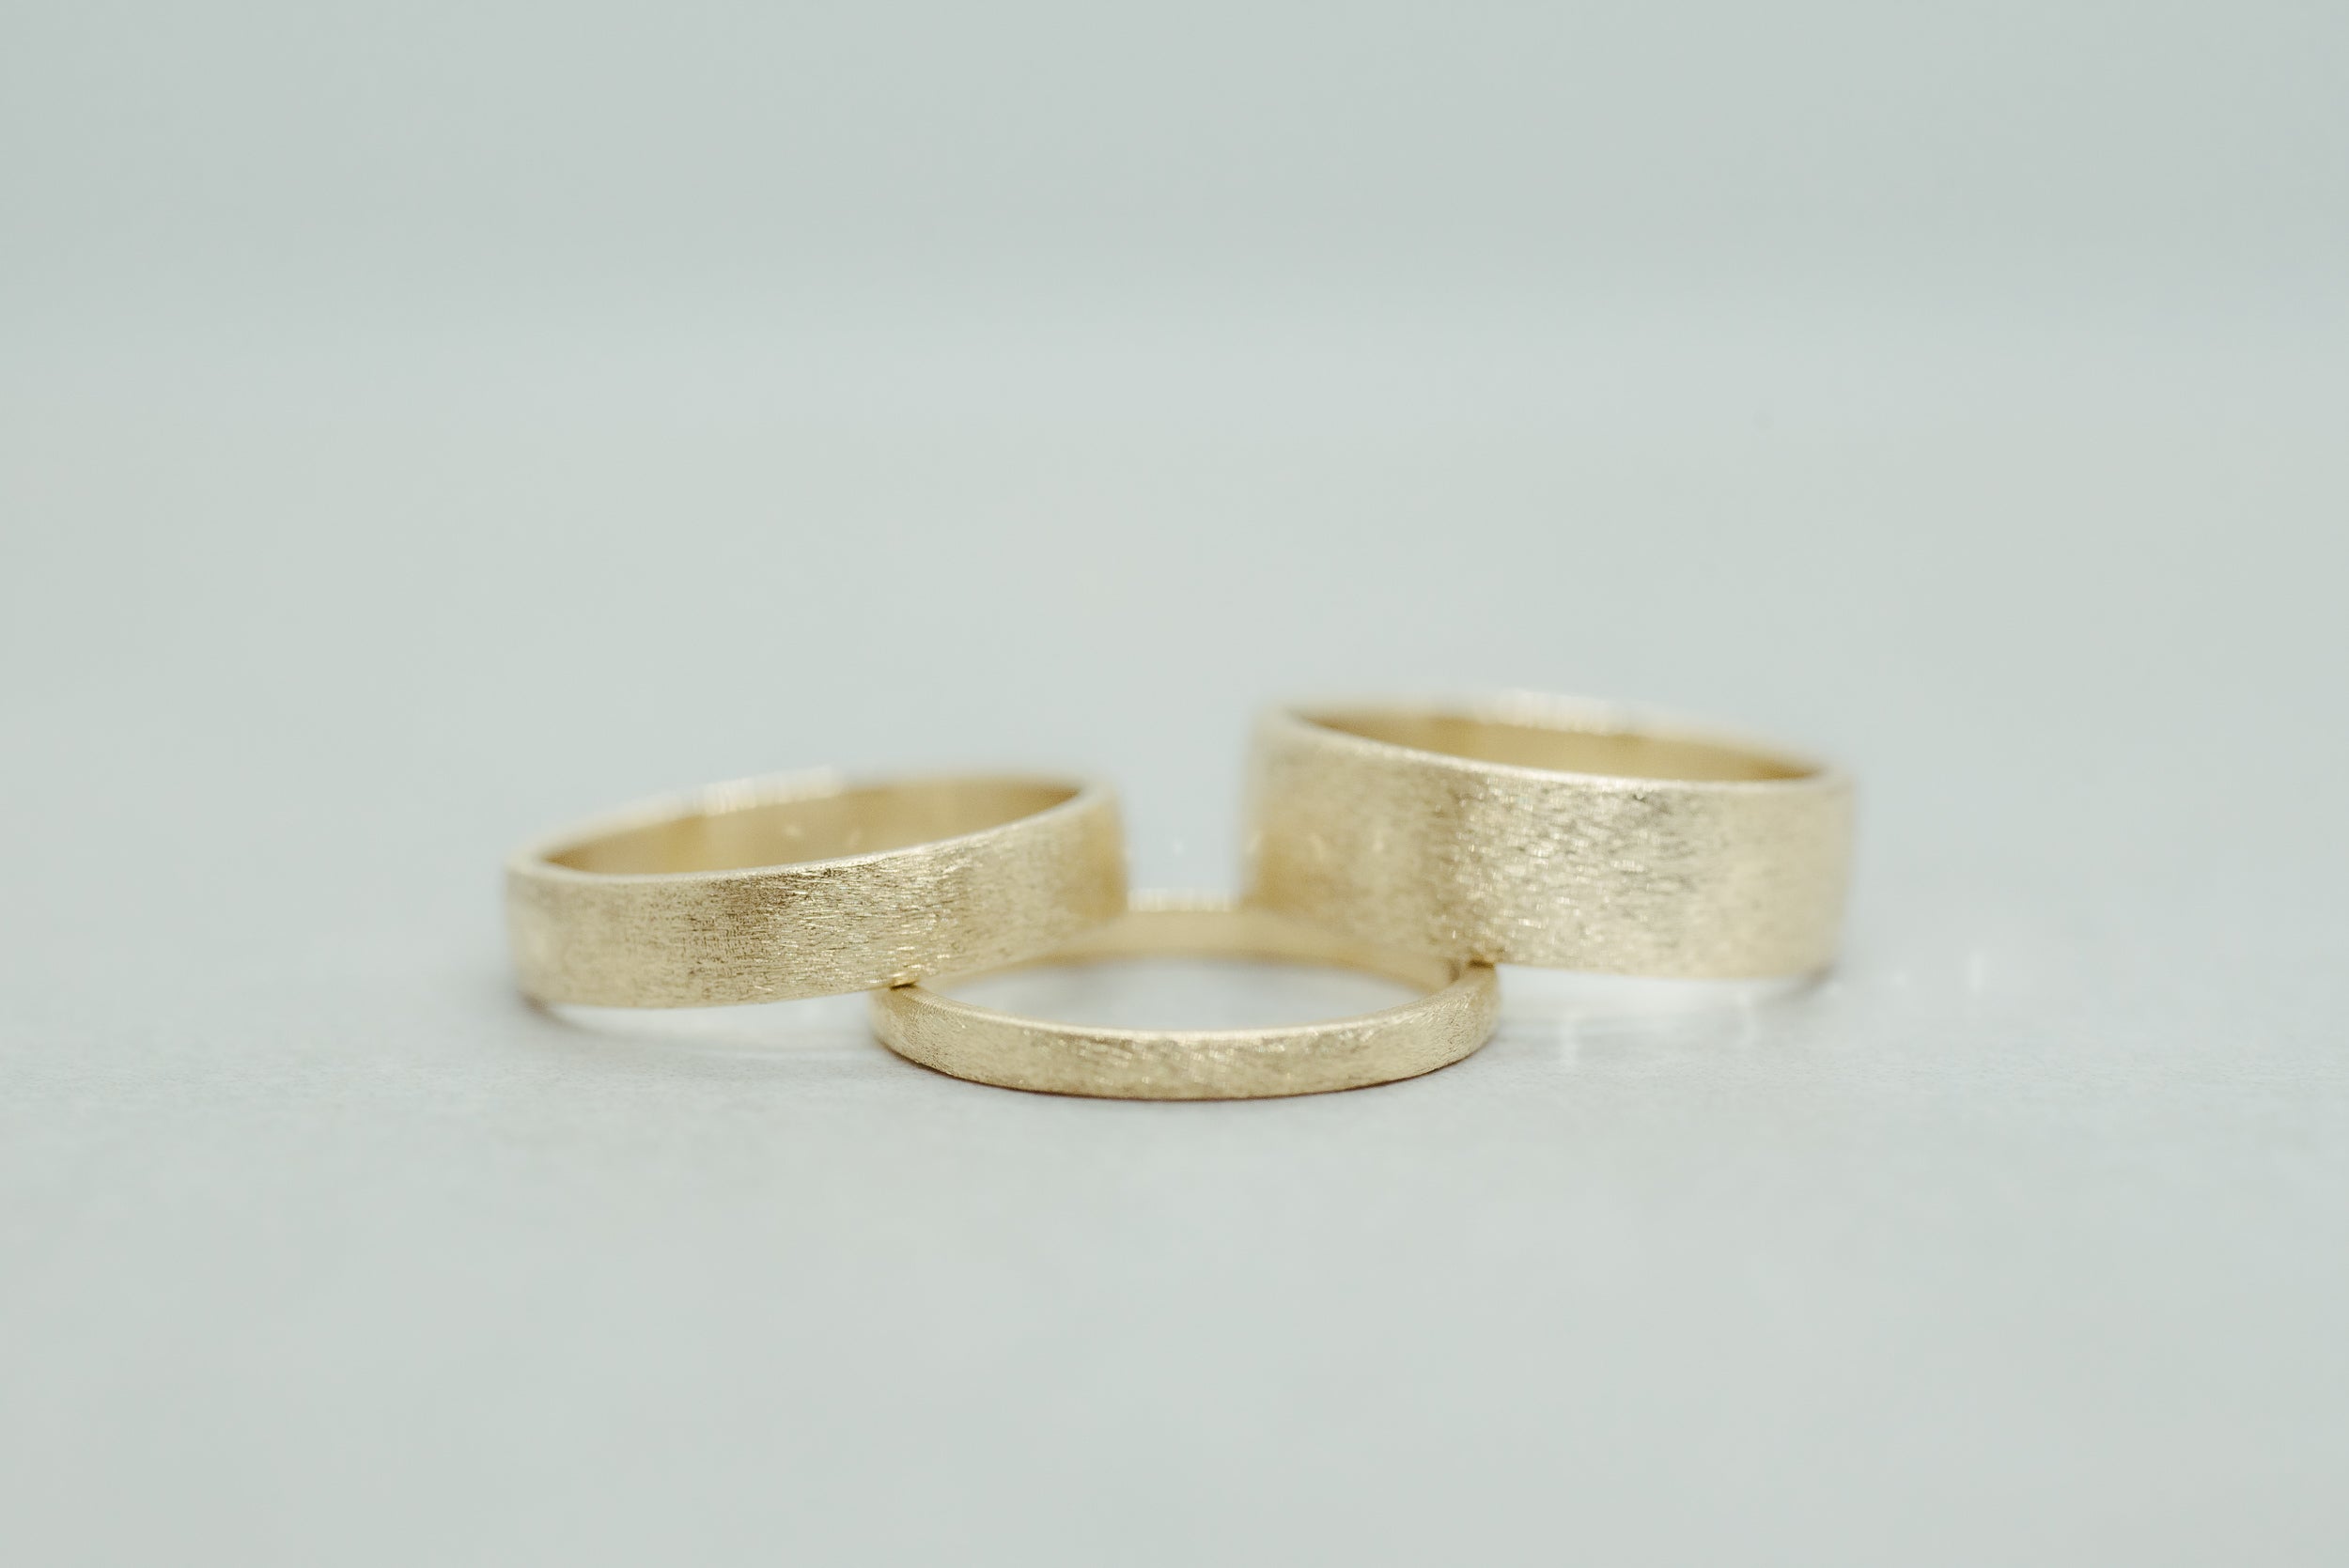 Brushed Wedding Band 2mm - Lelya - bespoke engagement and wedding rings made in Scotland, UK